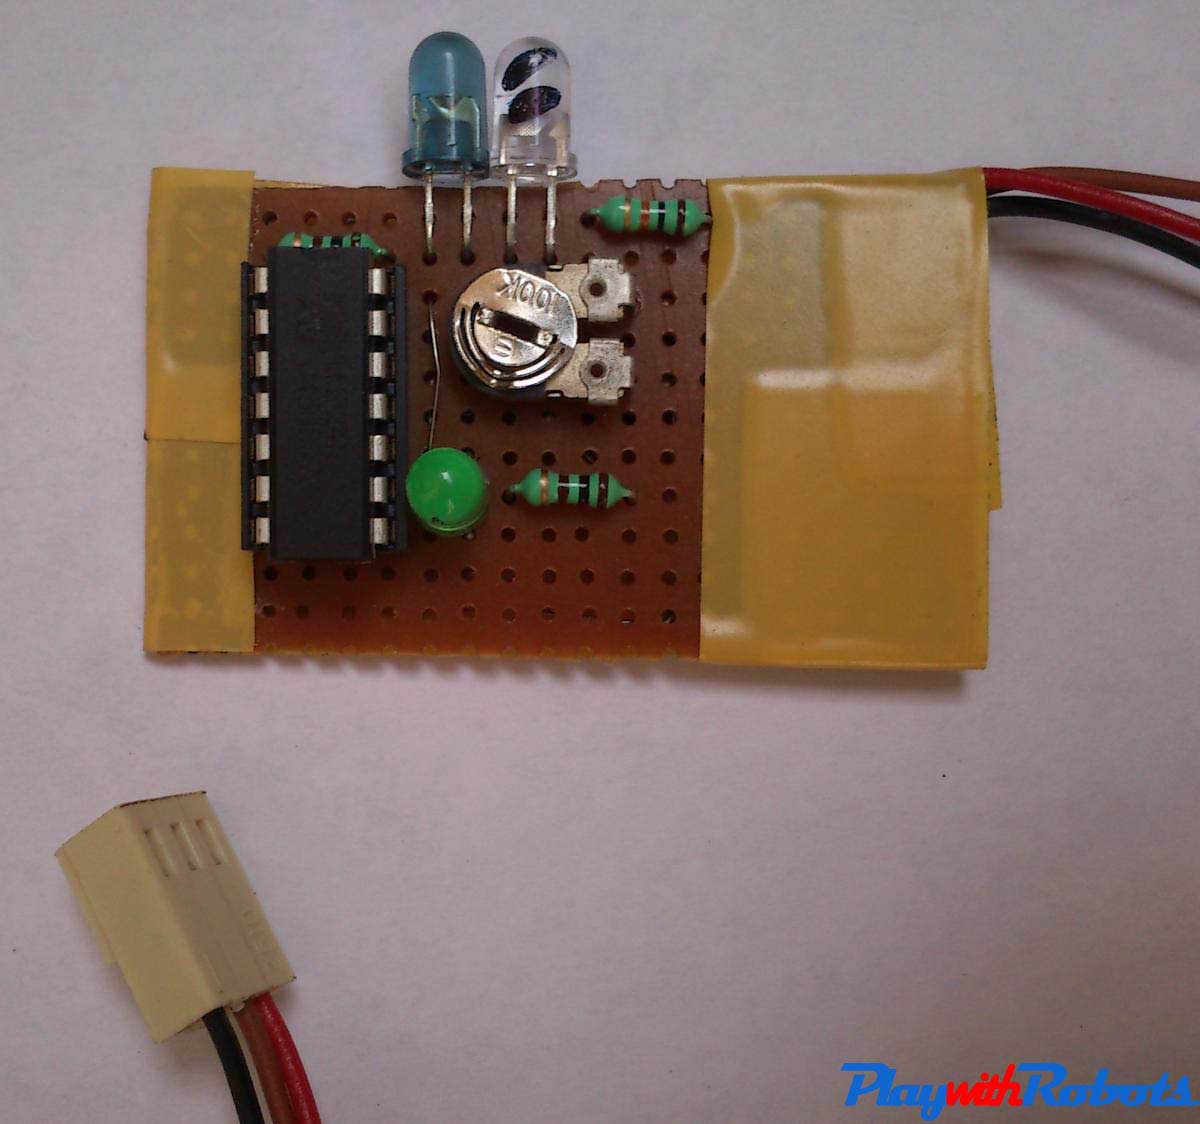 Edge Detector sensor circuit